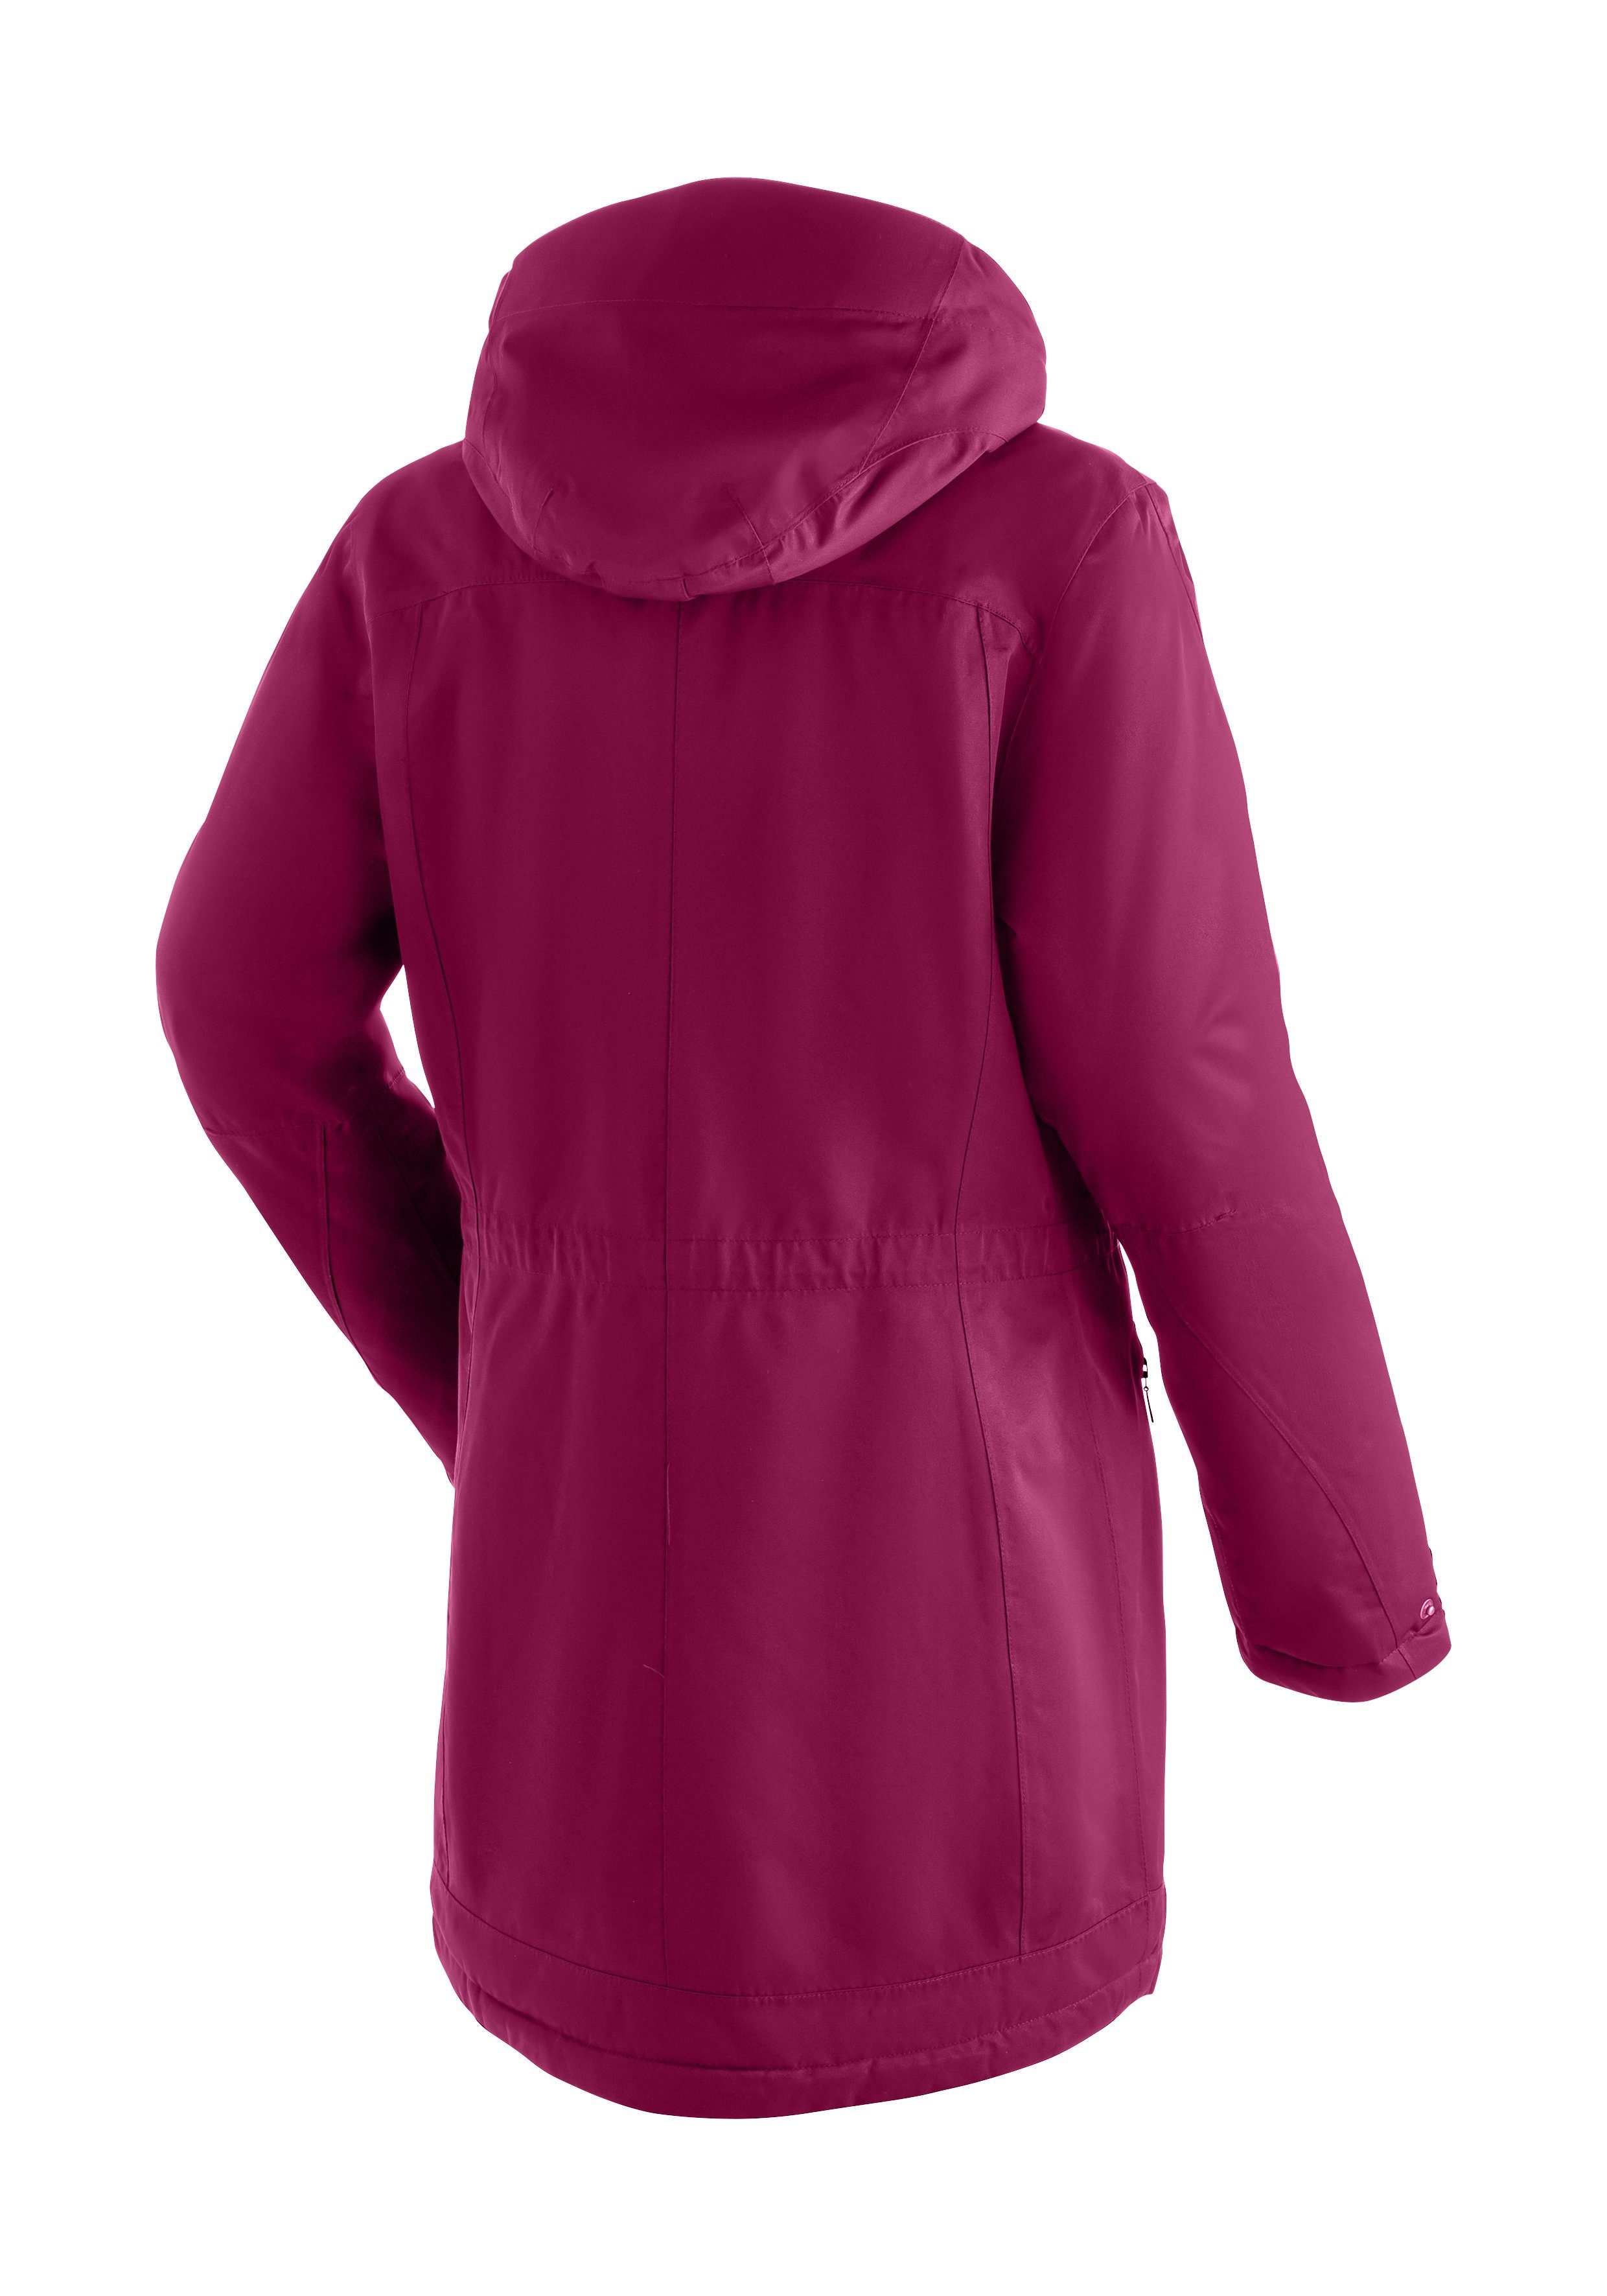 Maier Sports Funktionsjacke Lisa vollem 2 Wetterschutz Outdoor-Mantel mit magenta